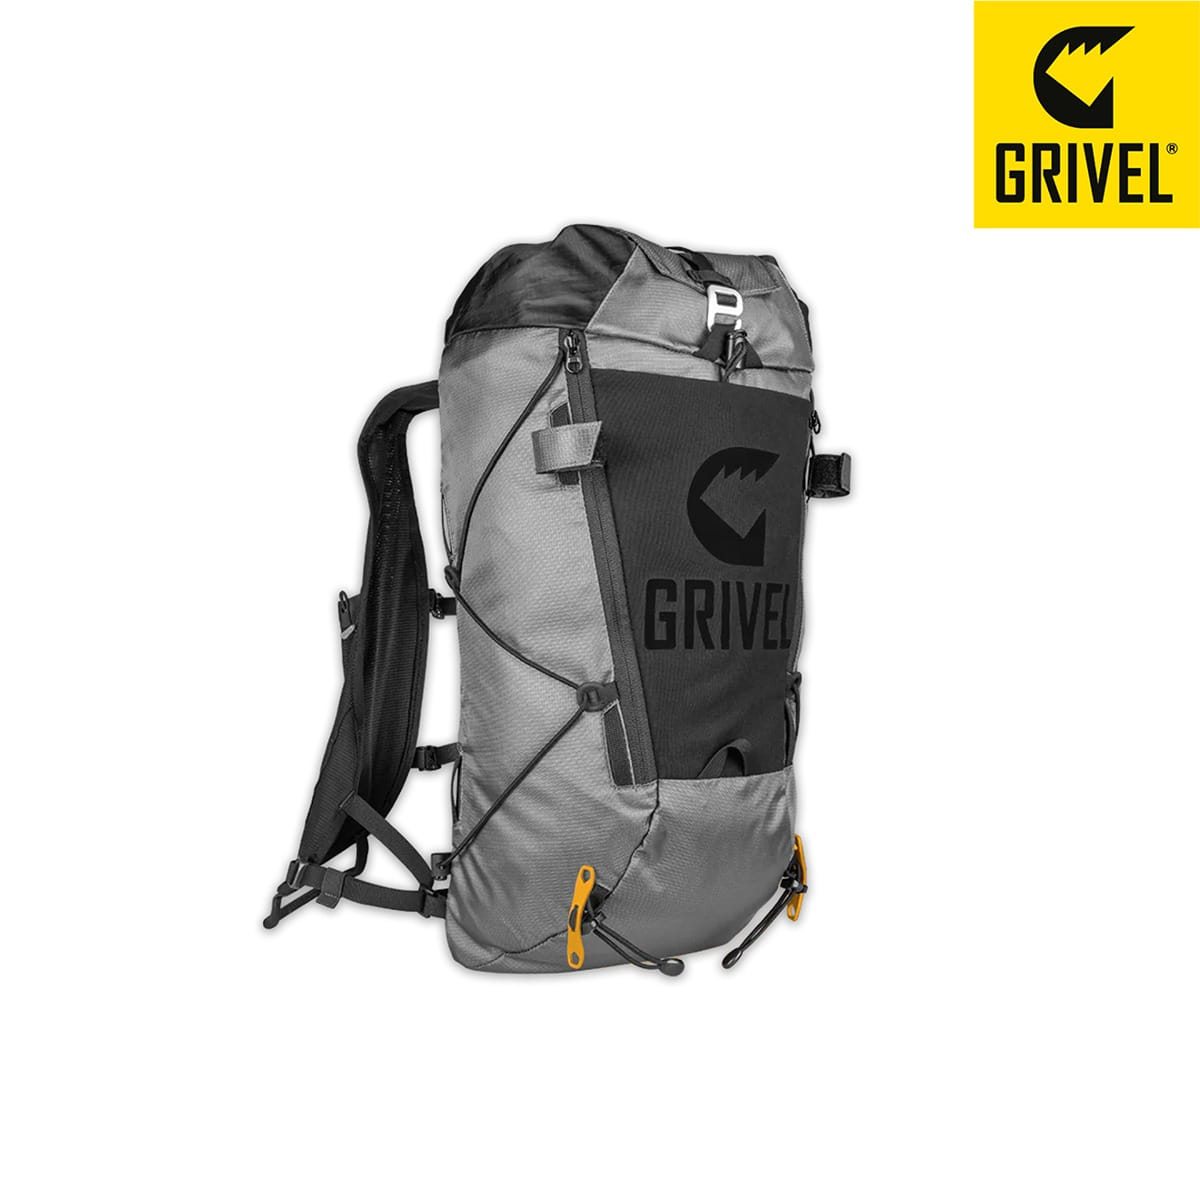 그리벨 백팩 라피도 18 backpack RAPIDO 18 멀티 피치 등반에 최적인 경량 백팩